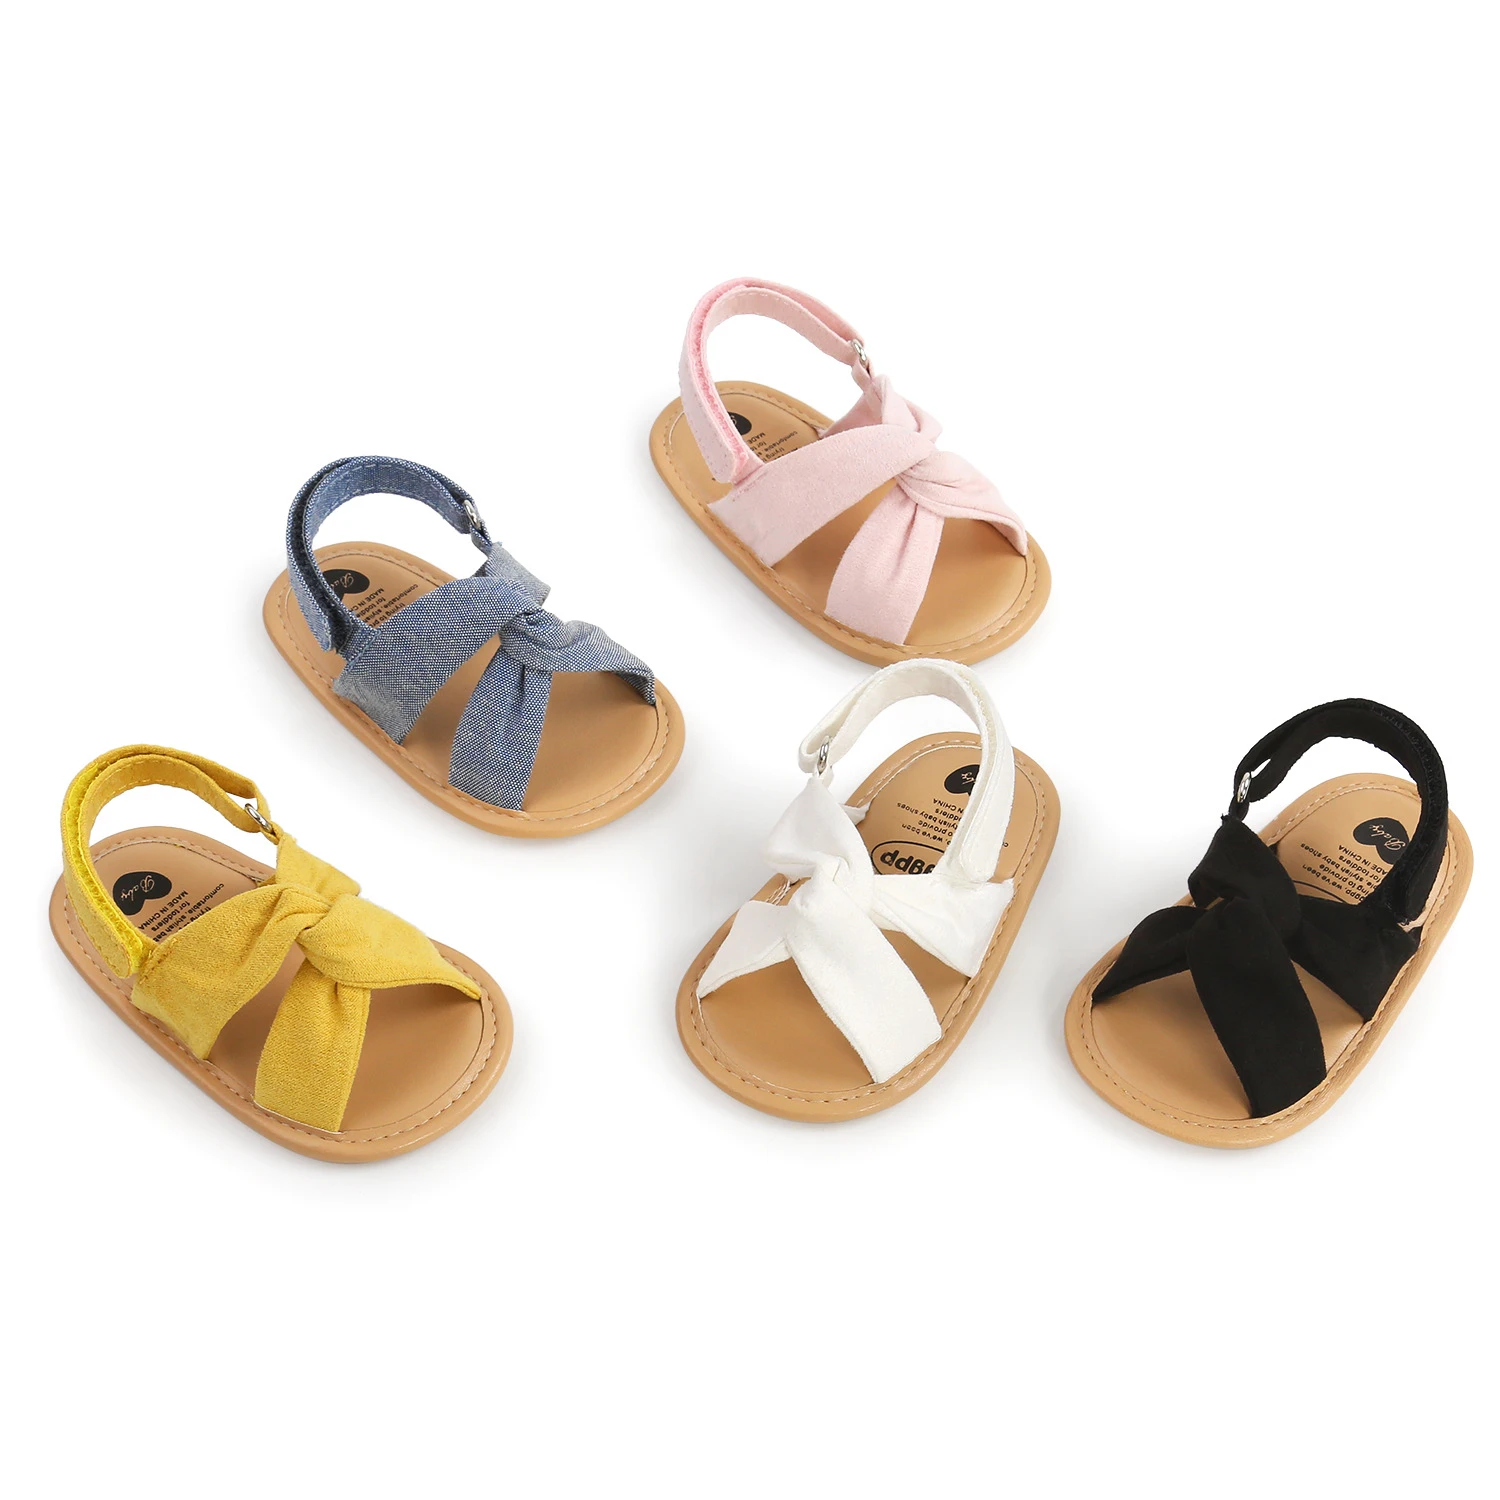 Zapatos informales con cordones para bebés sandalias suaves antideslizantes para primeros pasos 